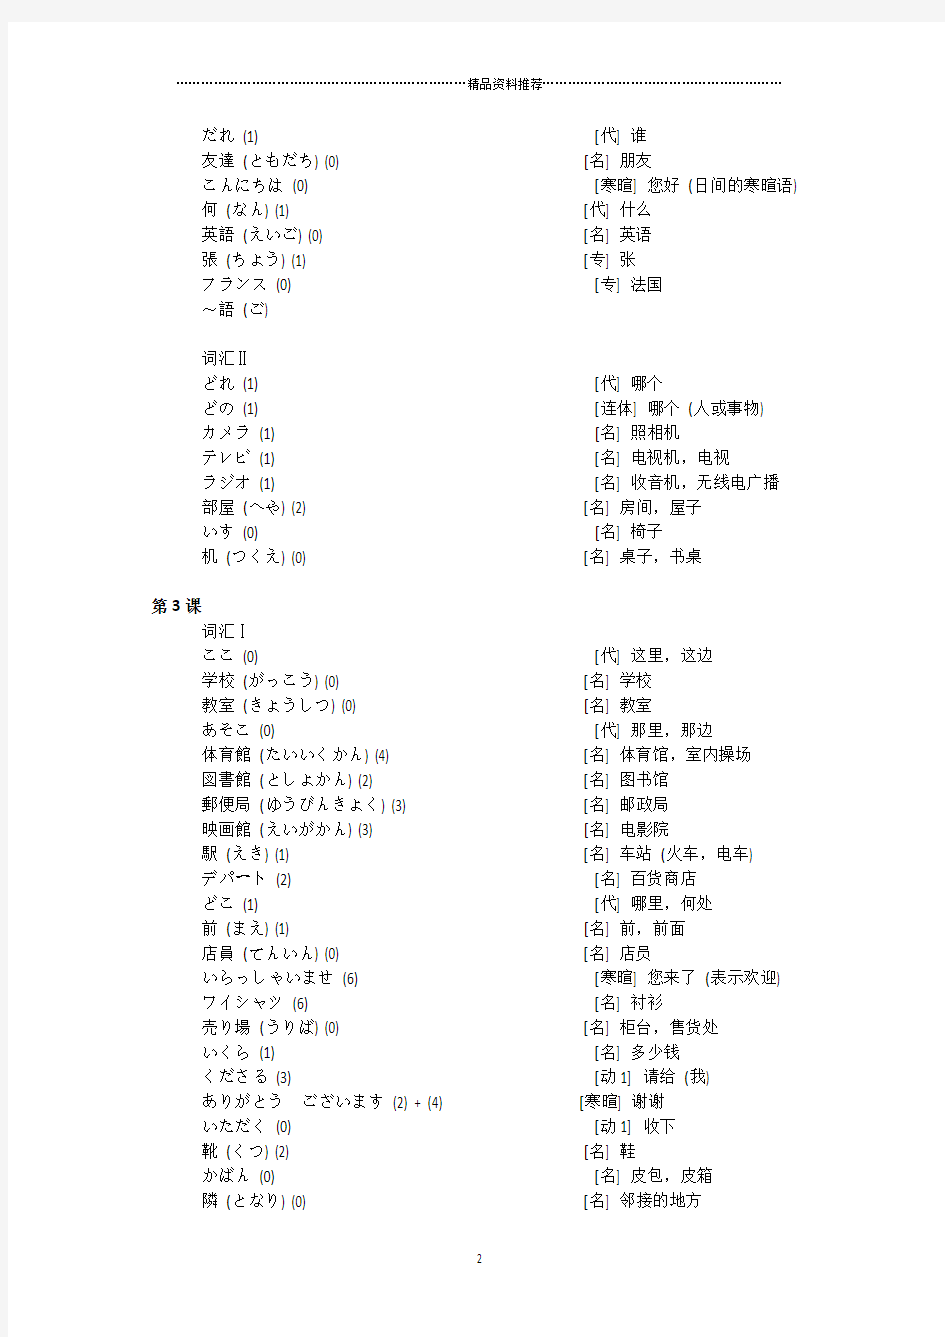 标准日本语(旧版)初级上册词汇